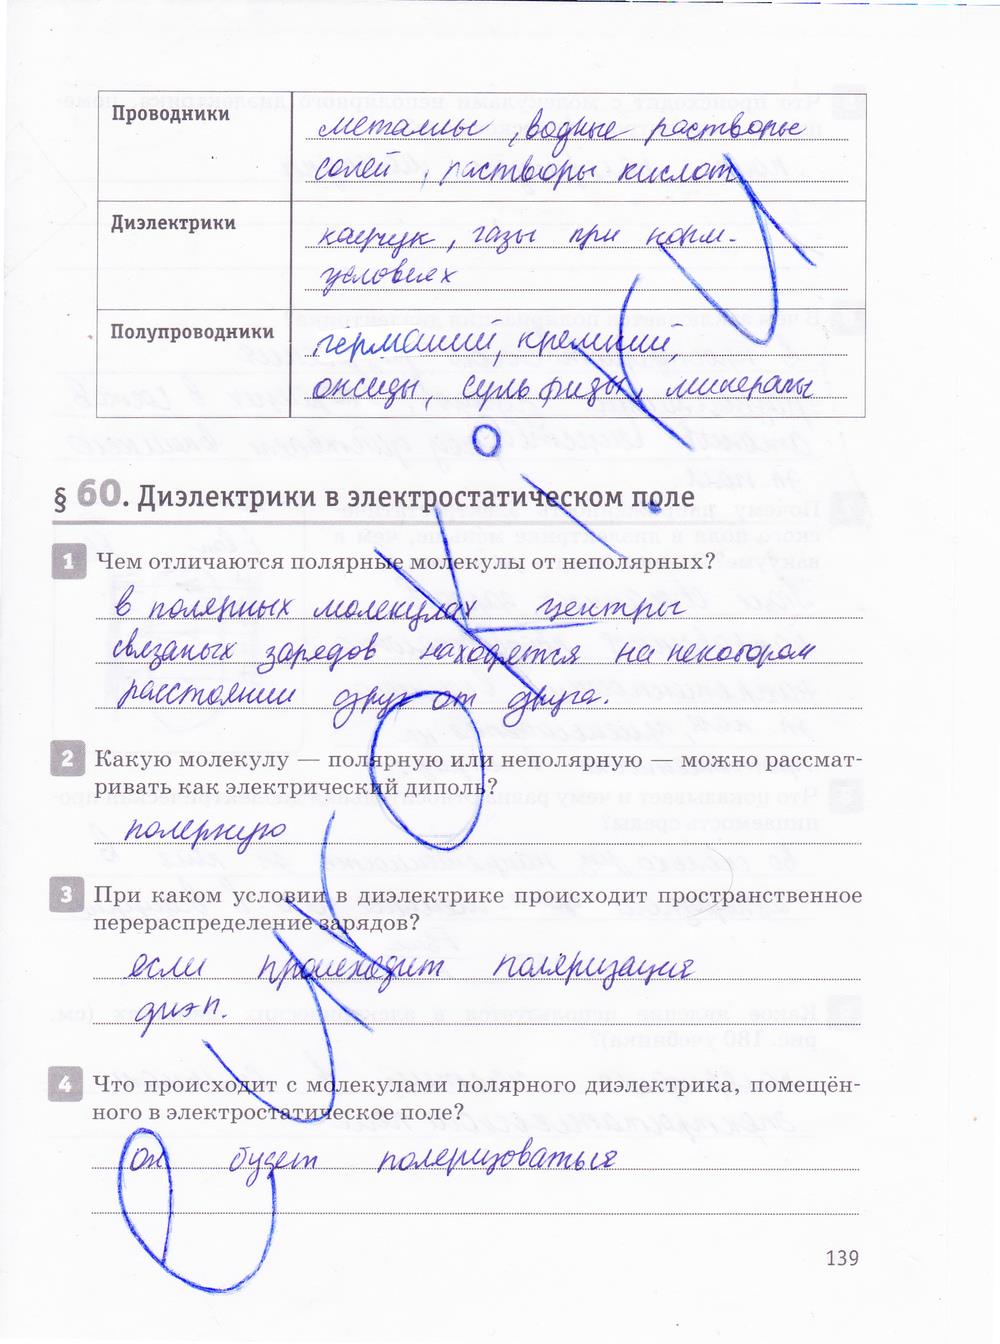 гдз 10 класс рабочая тетрадь страница 139 физика Касьянов, Дмитриева